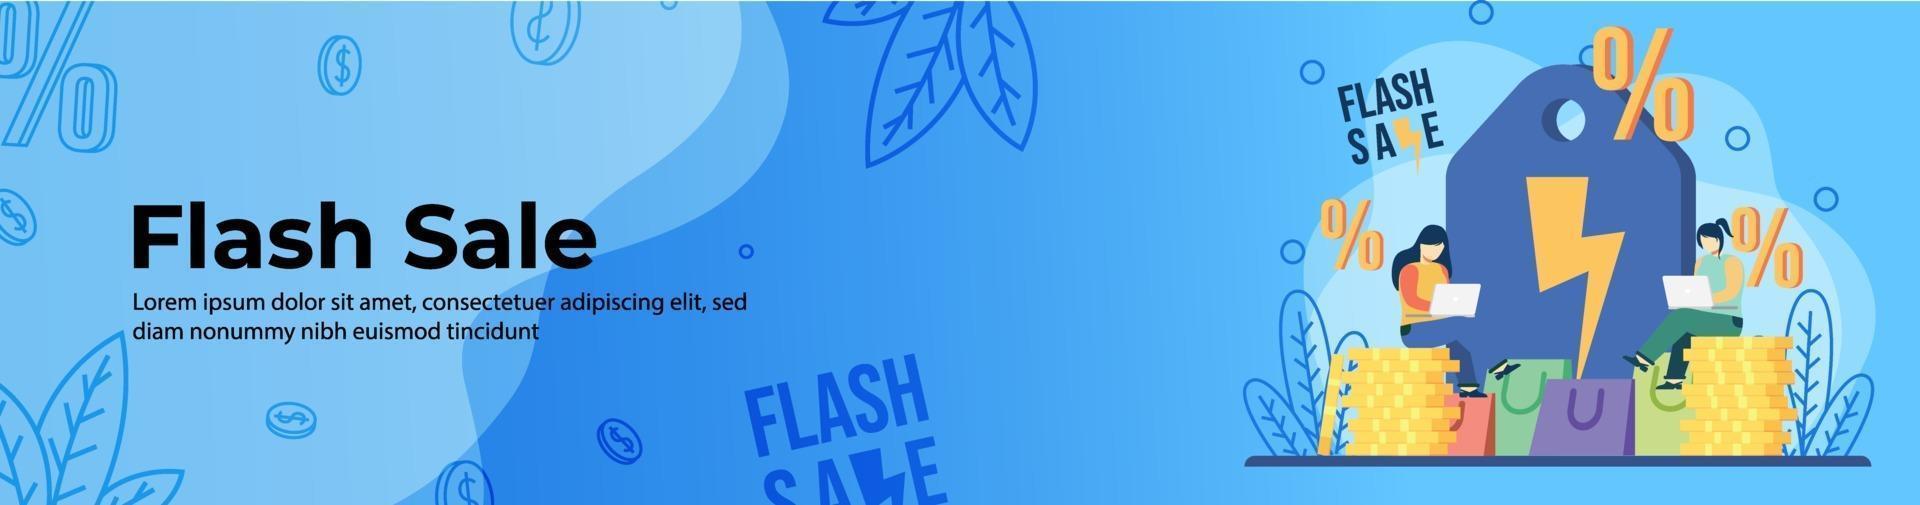 diseño de banner web de venta flash vector